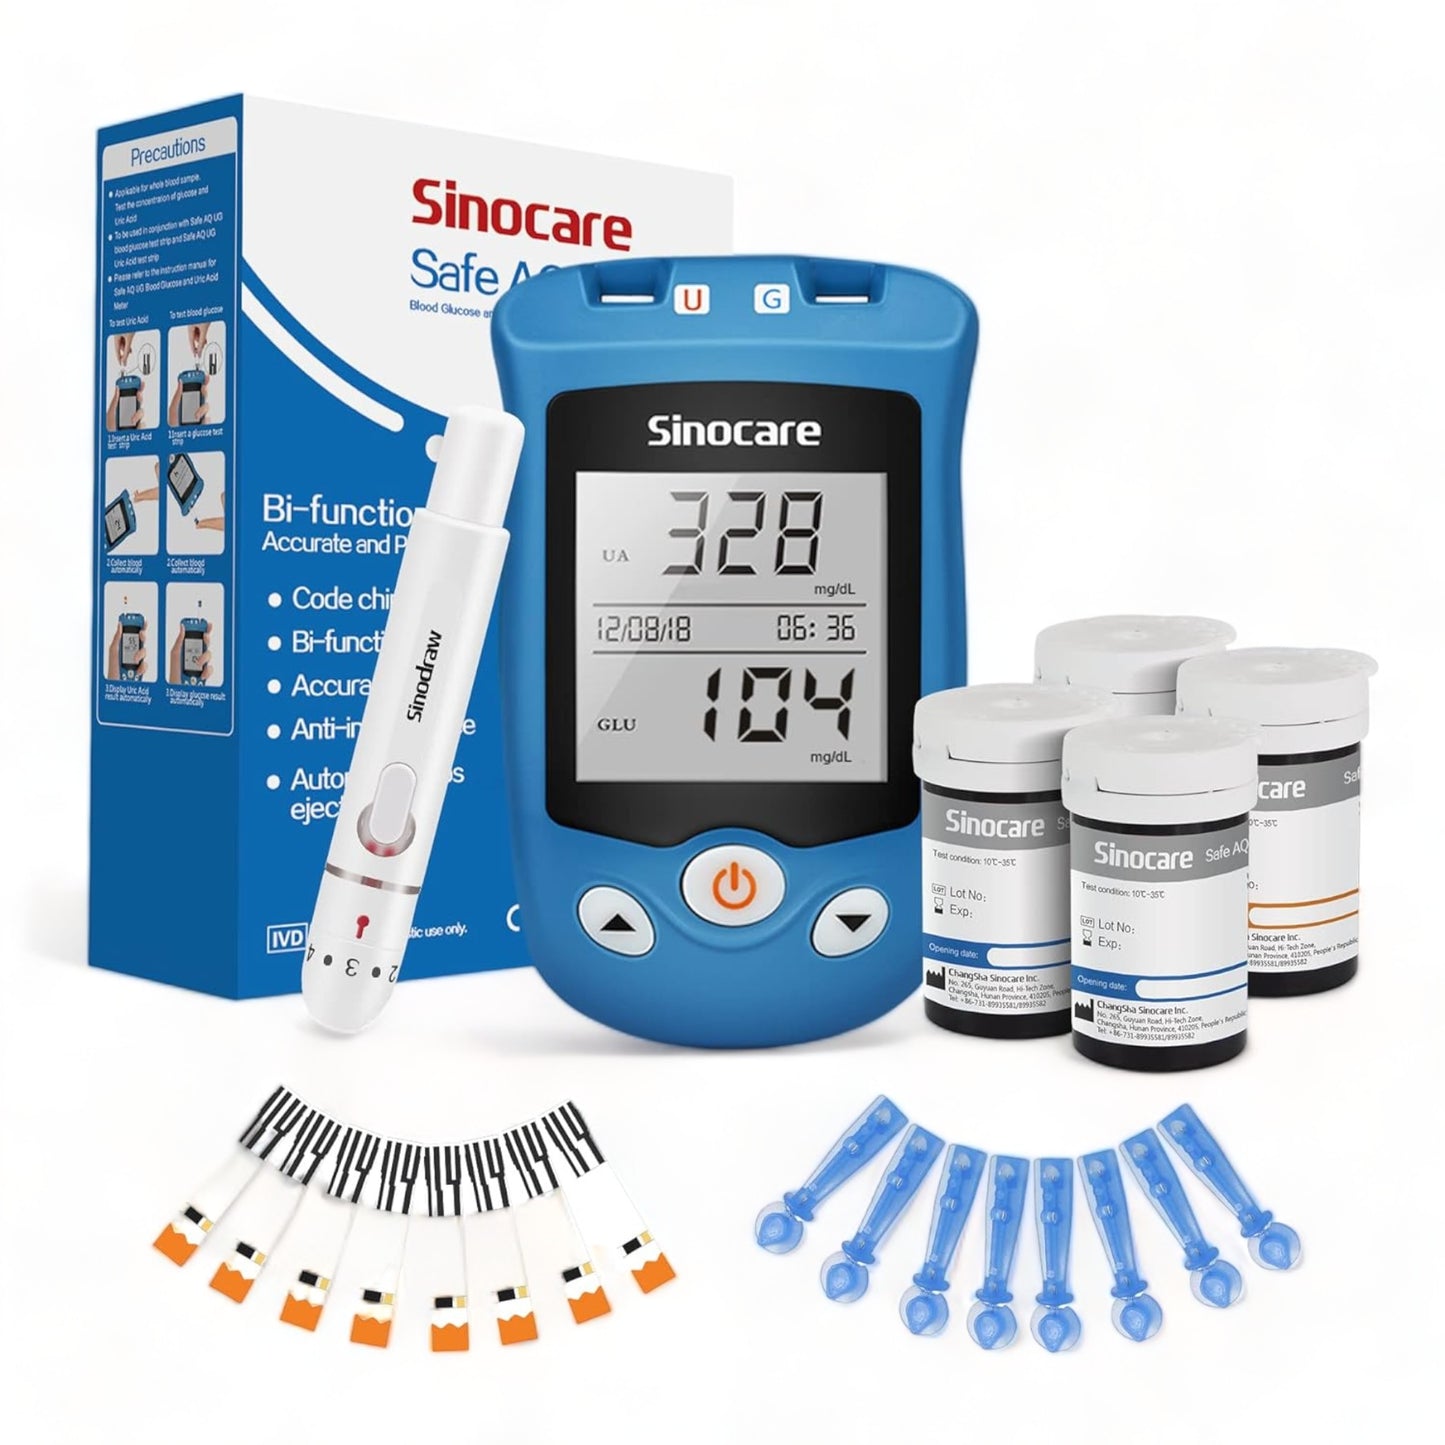 Das Sinocare Blutzucker- und Harnsäure-Messgerät Set, inklusive 50 Blutzuckerteststreifen, 50 Harnsäureteststreifen und 100 Lanzetten, bietet umfassende Überwachungsmöglichkeiten für die tägliche Gesundheit.